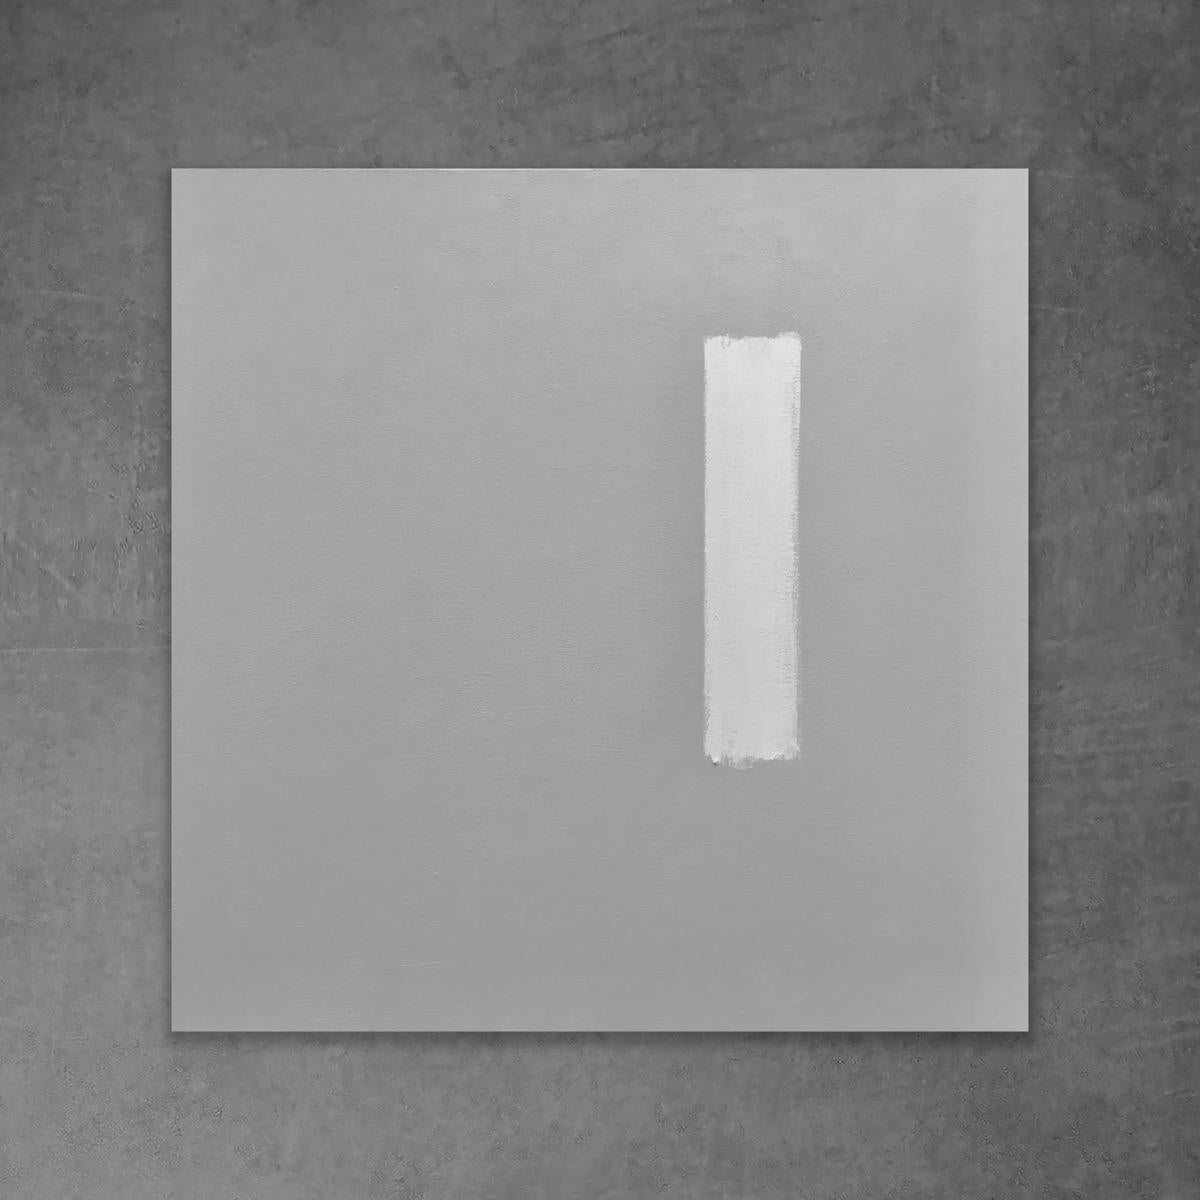 Finish Line - 20 Zoll x 20 Zoll, Grau, Weiß, Modern, Minimalistisches abstraktes Gemälde – Art von Andrea Stajan-Ferkul